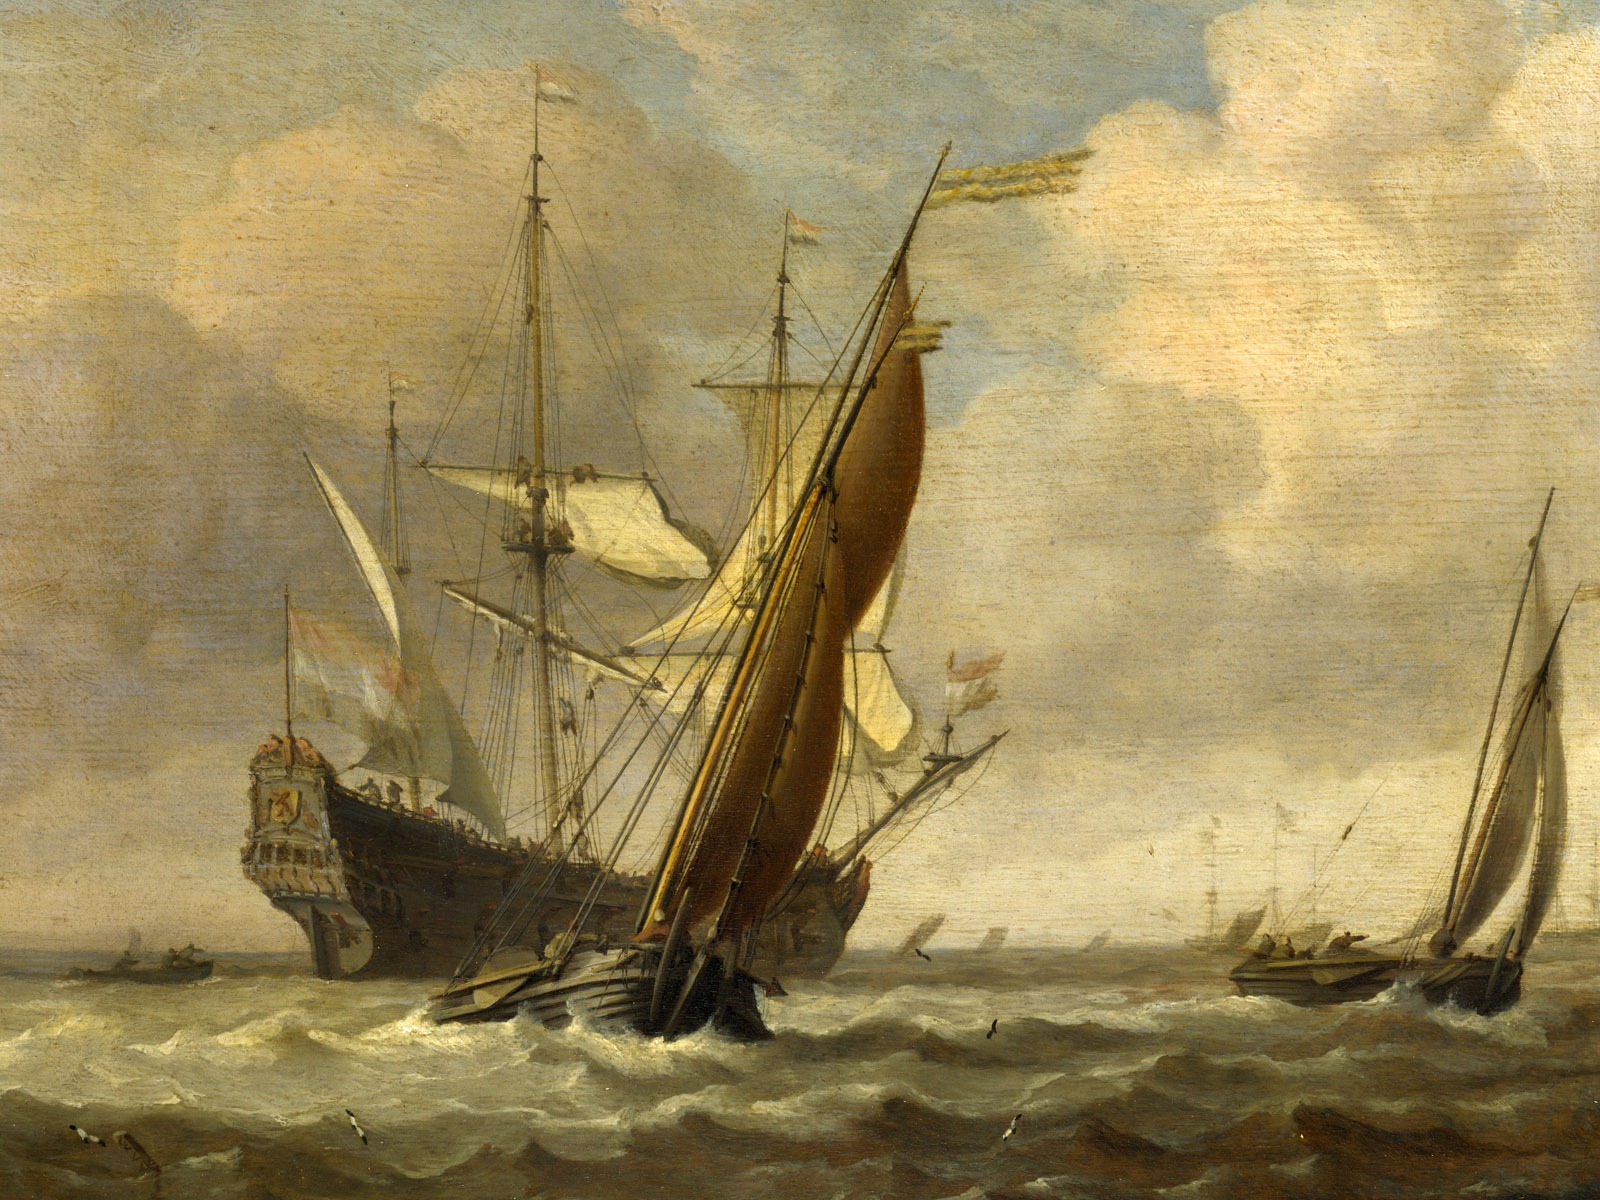 伦敦画廊帆船 壁纸(二)19 - 1600x1200